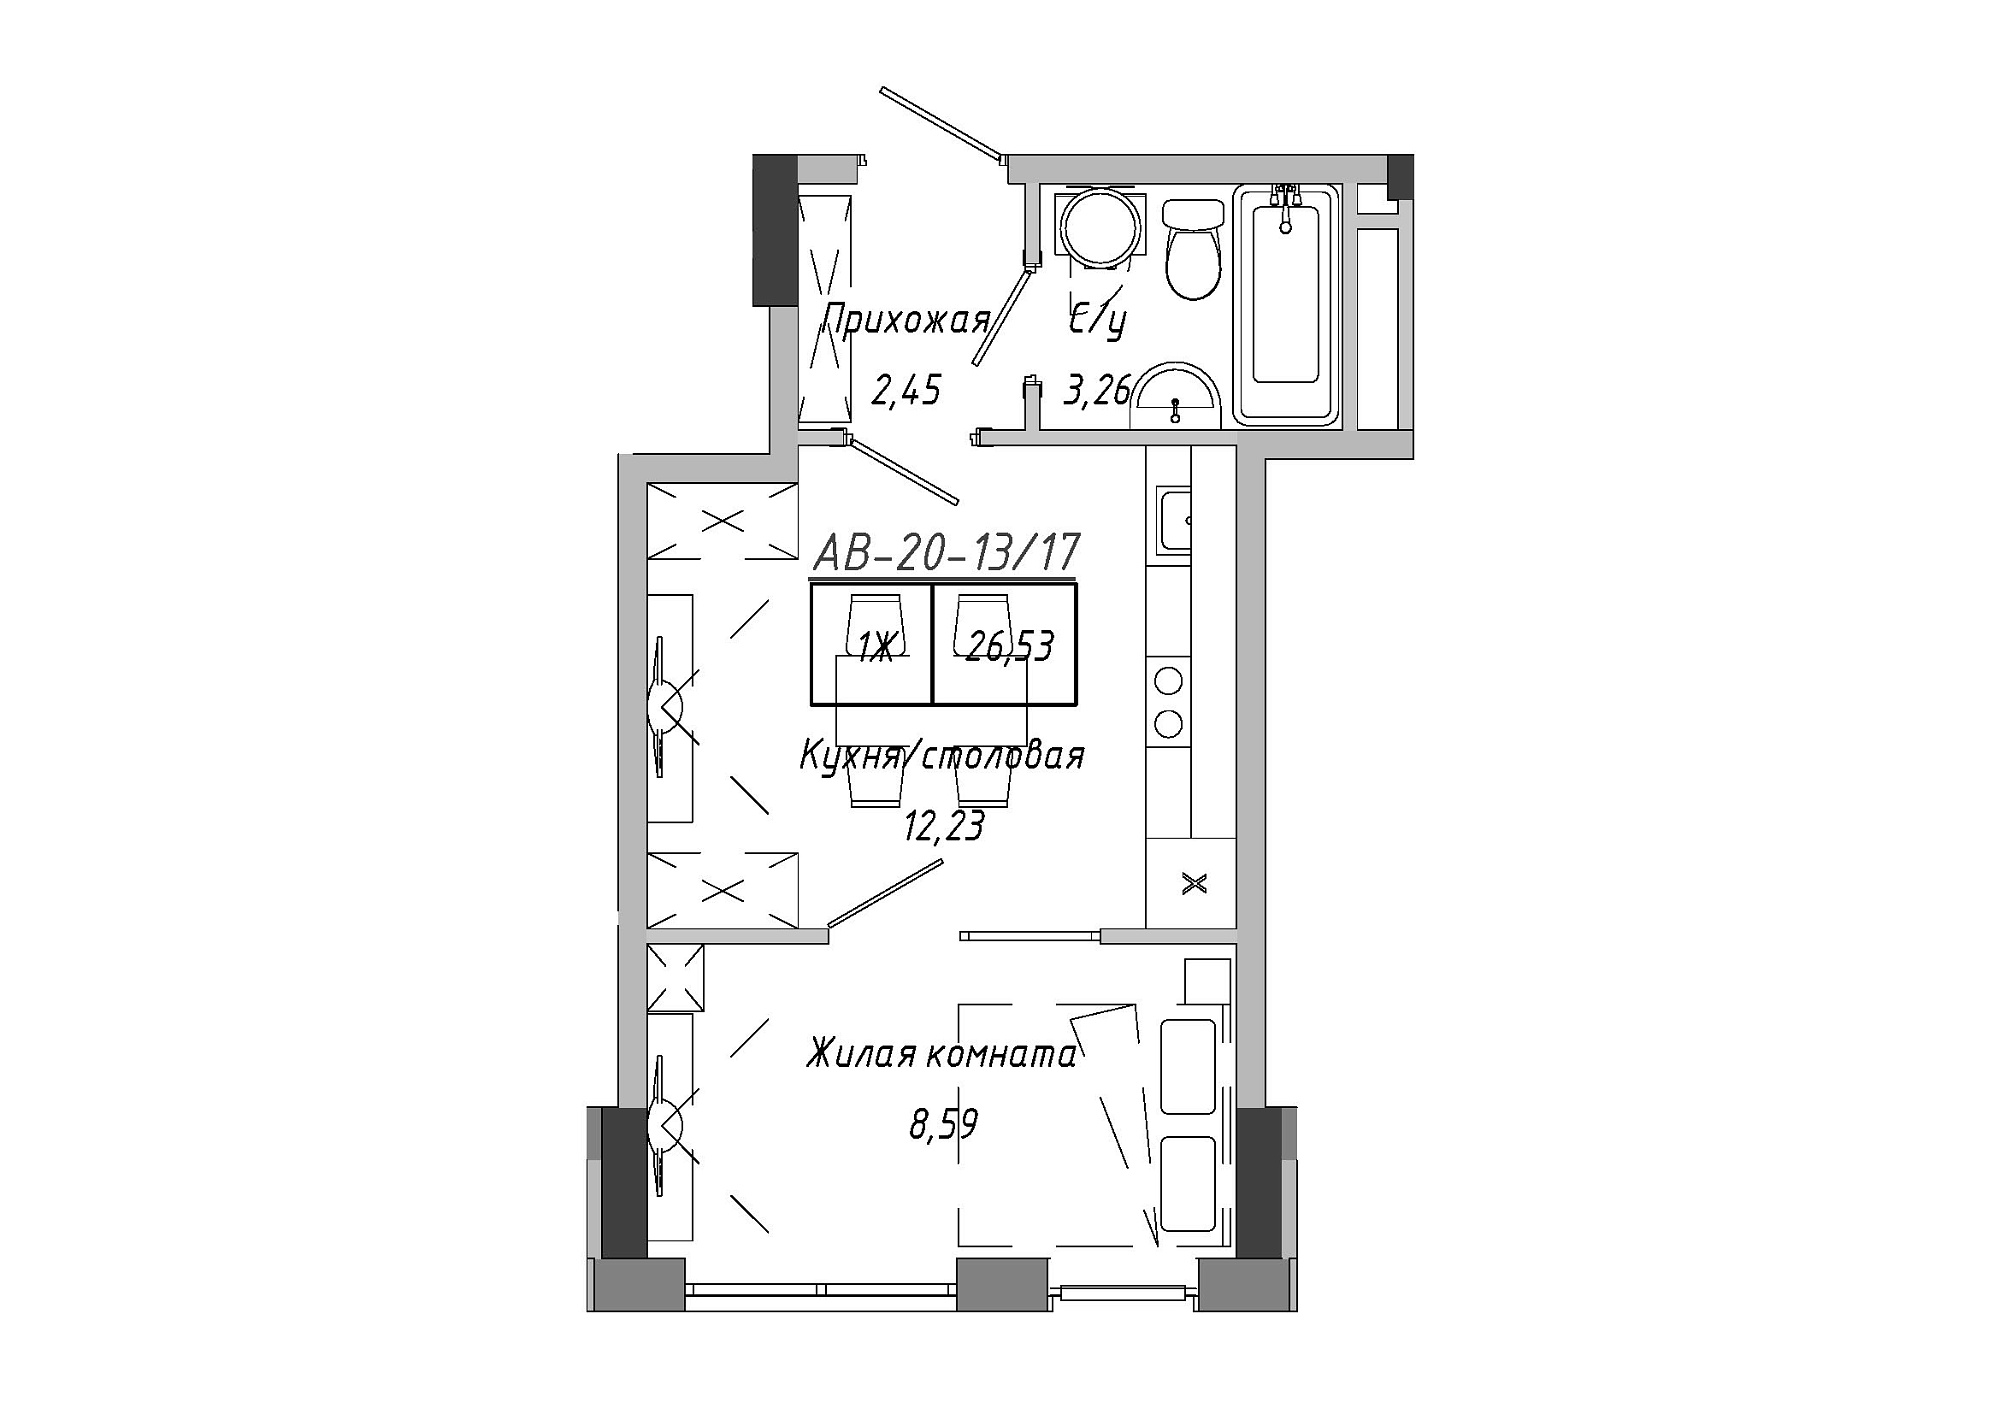 Планировка 1-к квартира площей 26.53м2, AB-20-13/00117.